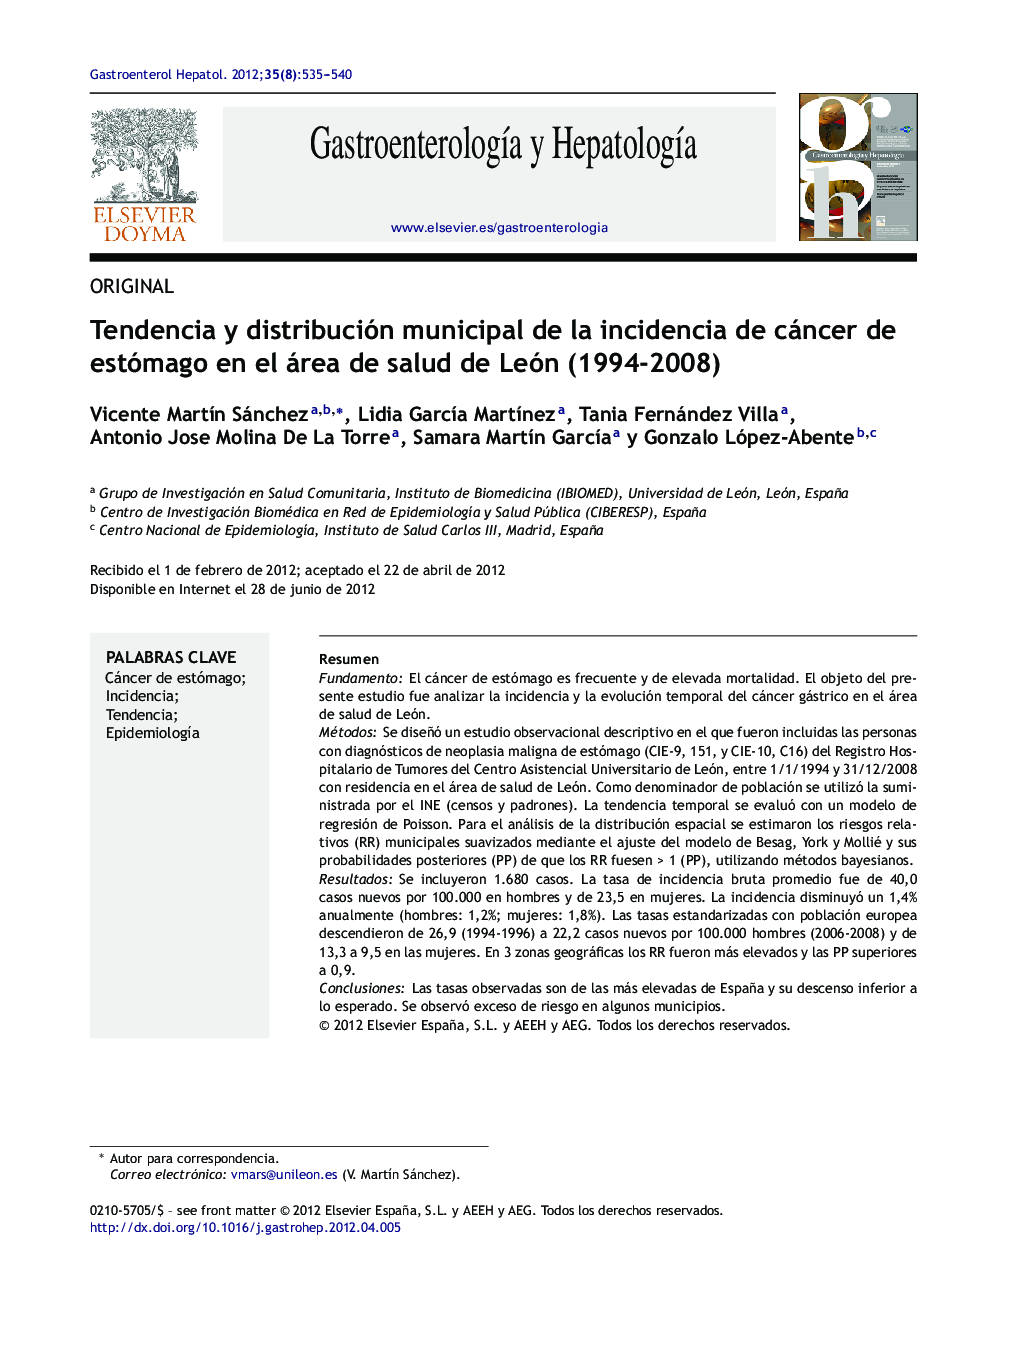 Tendencia y distribución municipal de la incidencia de cáncer de estómago en el área de salud de León (1994-2008)